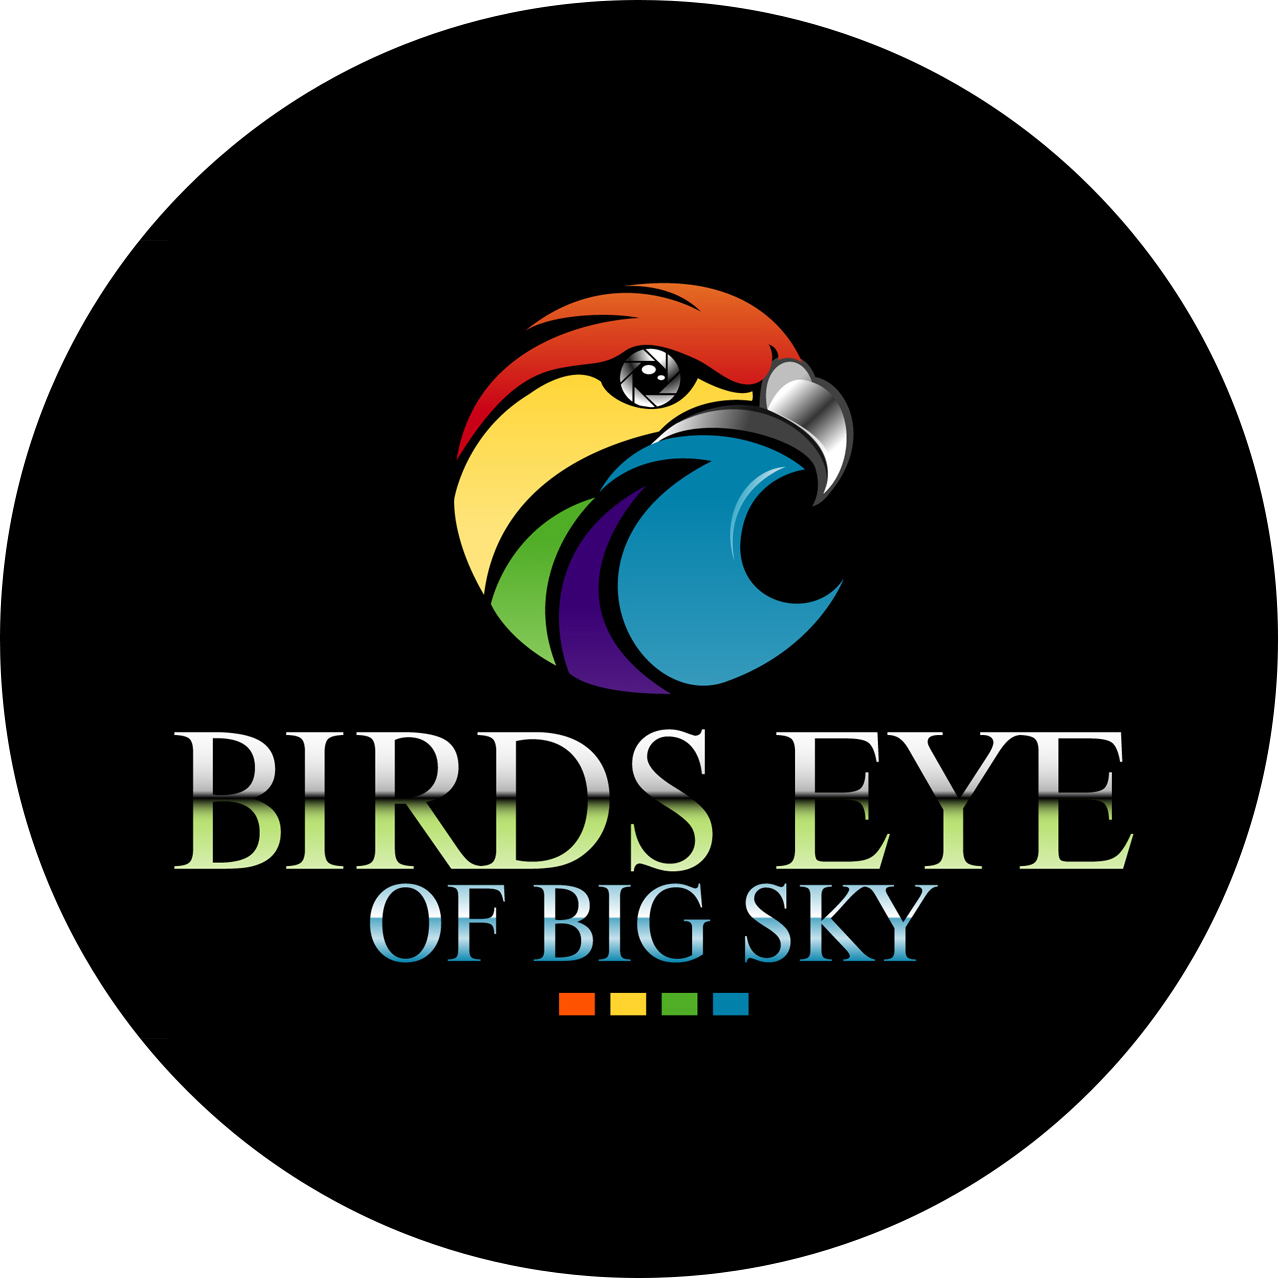 Birds Eye of Big Sky